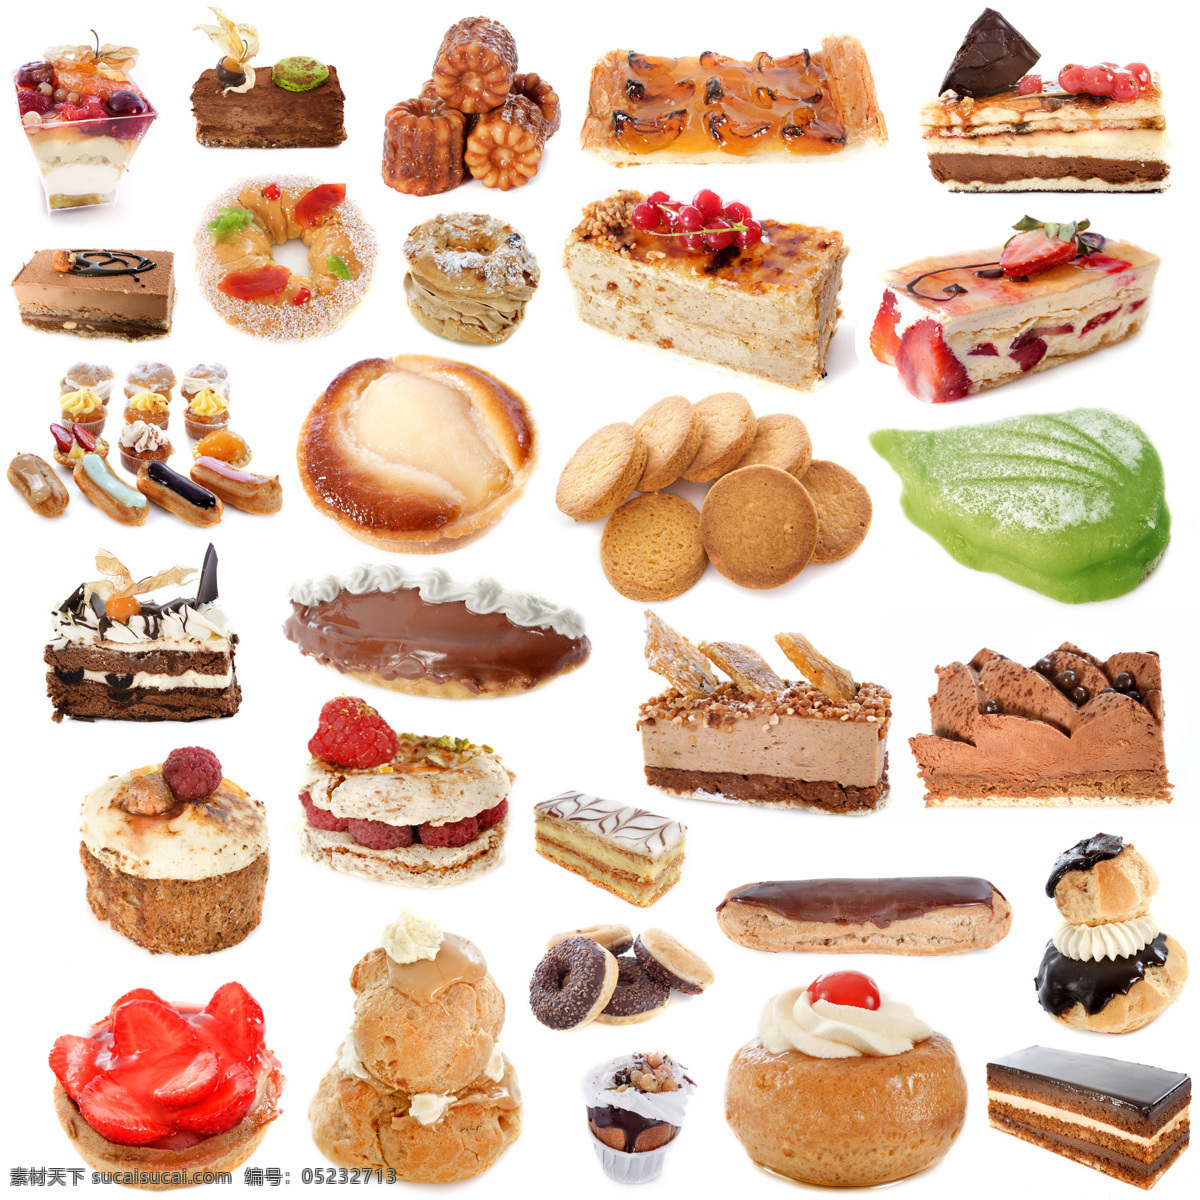 美味 面包 蛋糕 美味烤面包 甜品 餐饮美食 食物摄影 健康饮食 营养饮食 健康营养 生日蛋糕图片